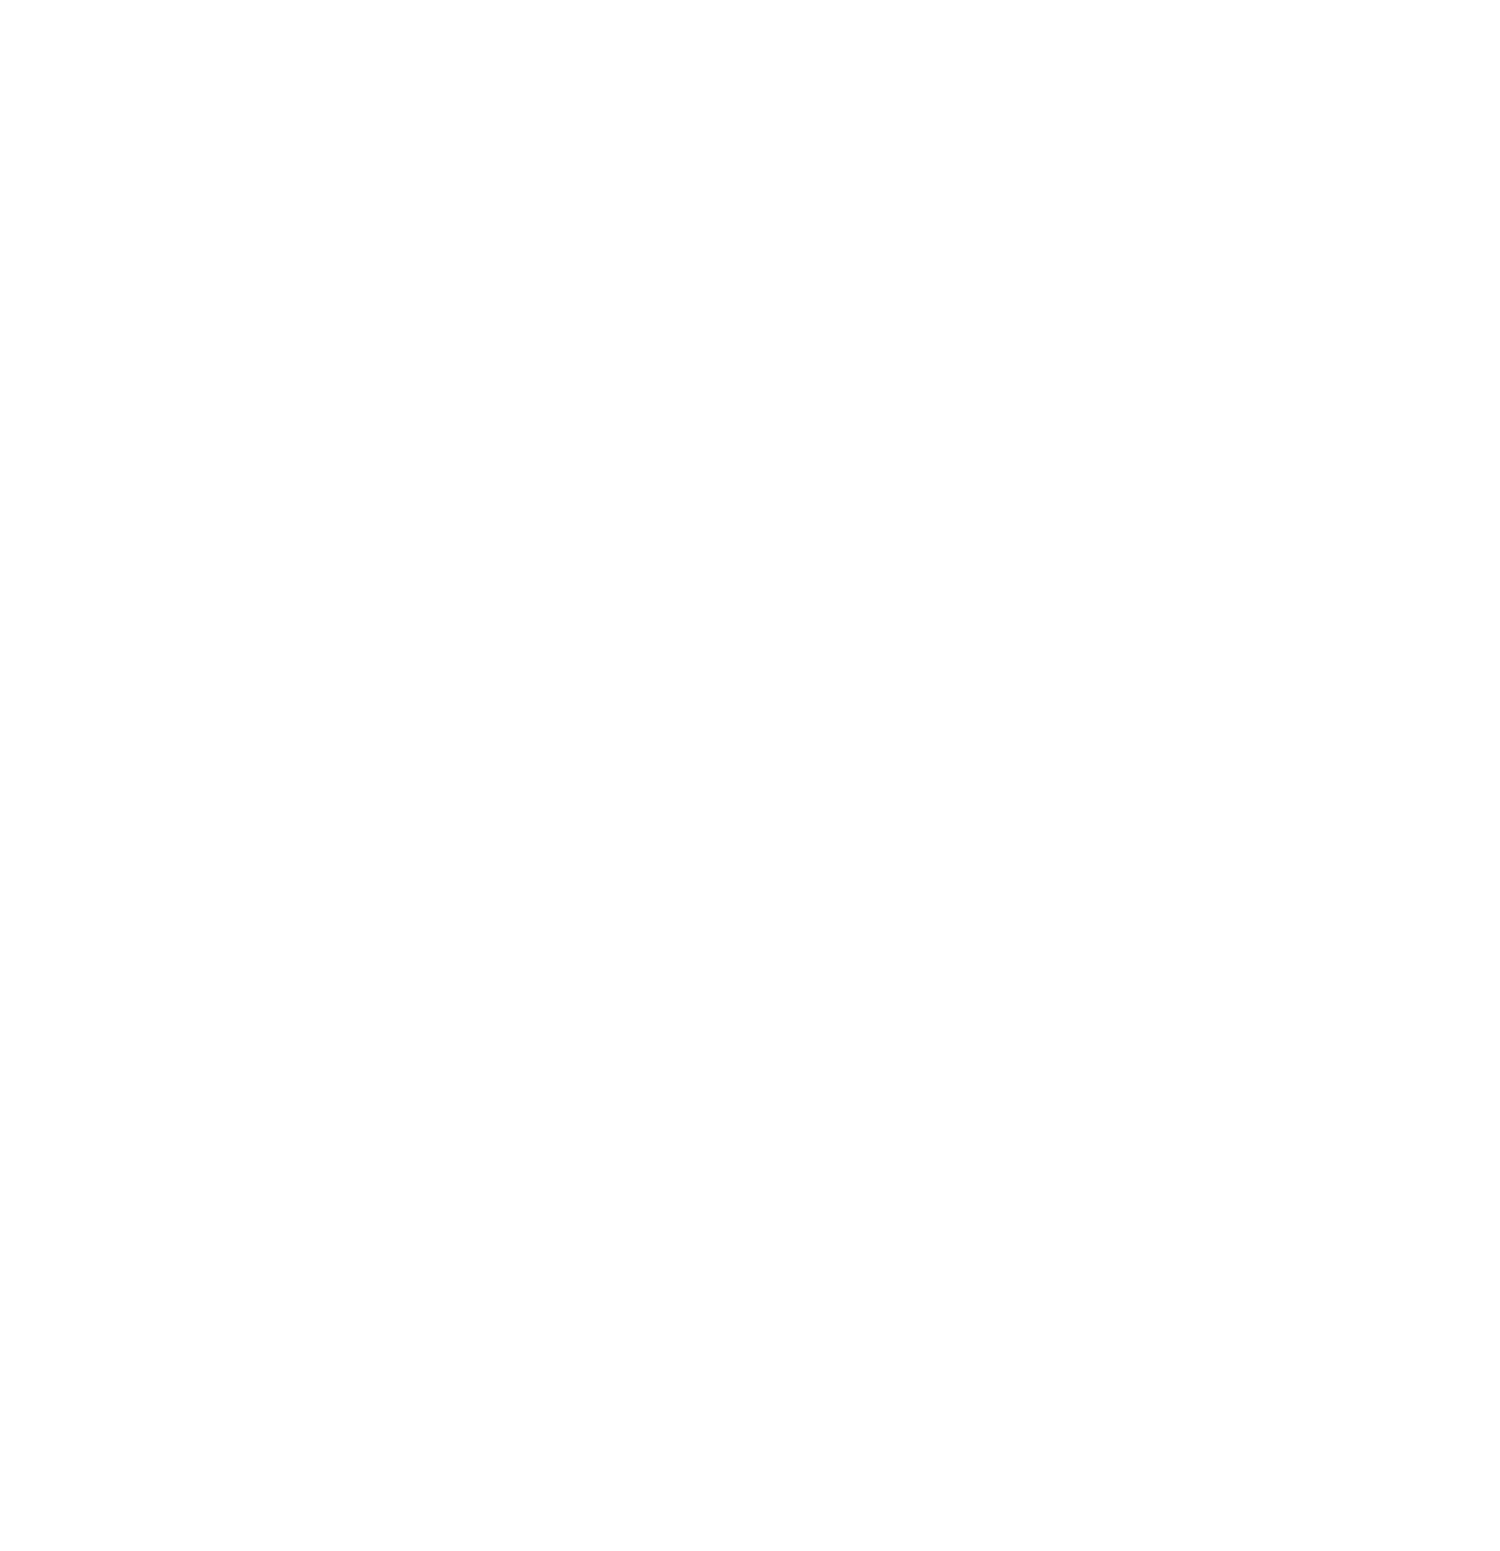 SoulRattle